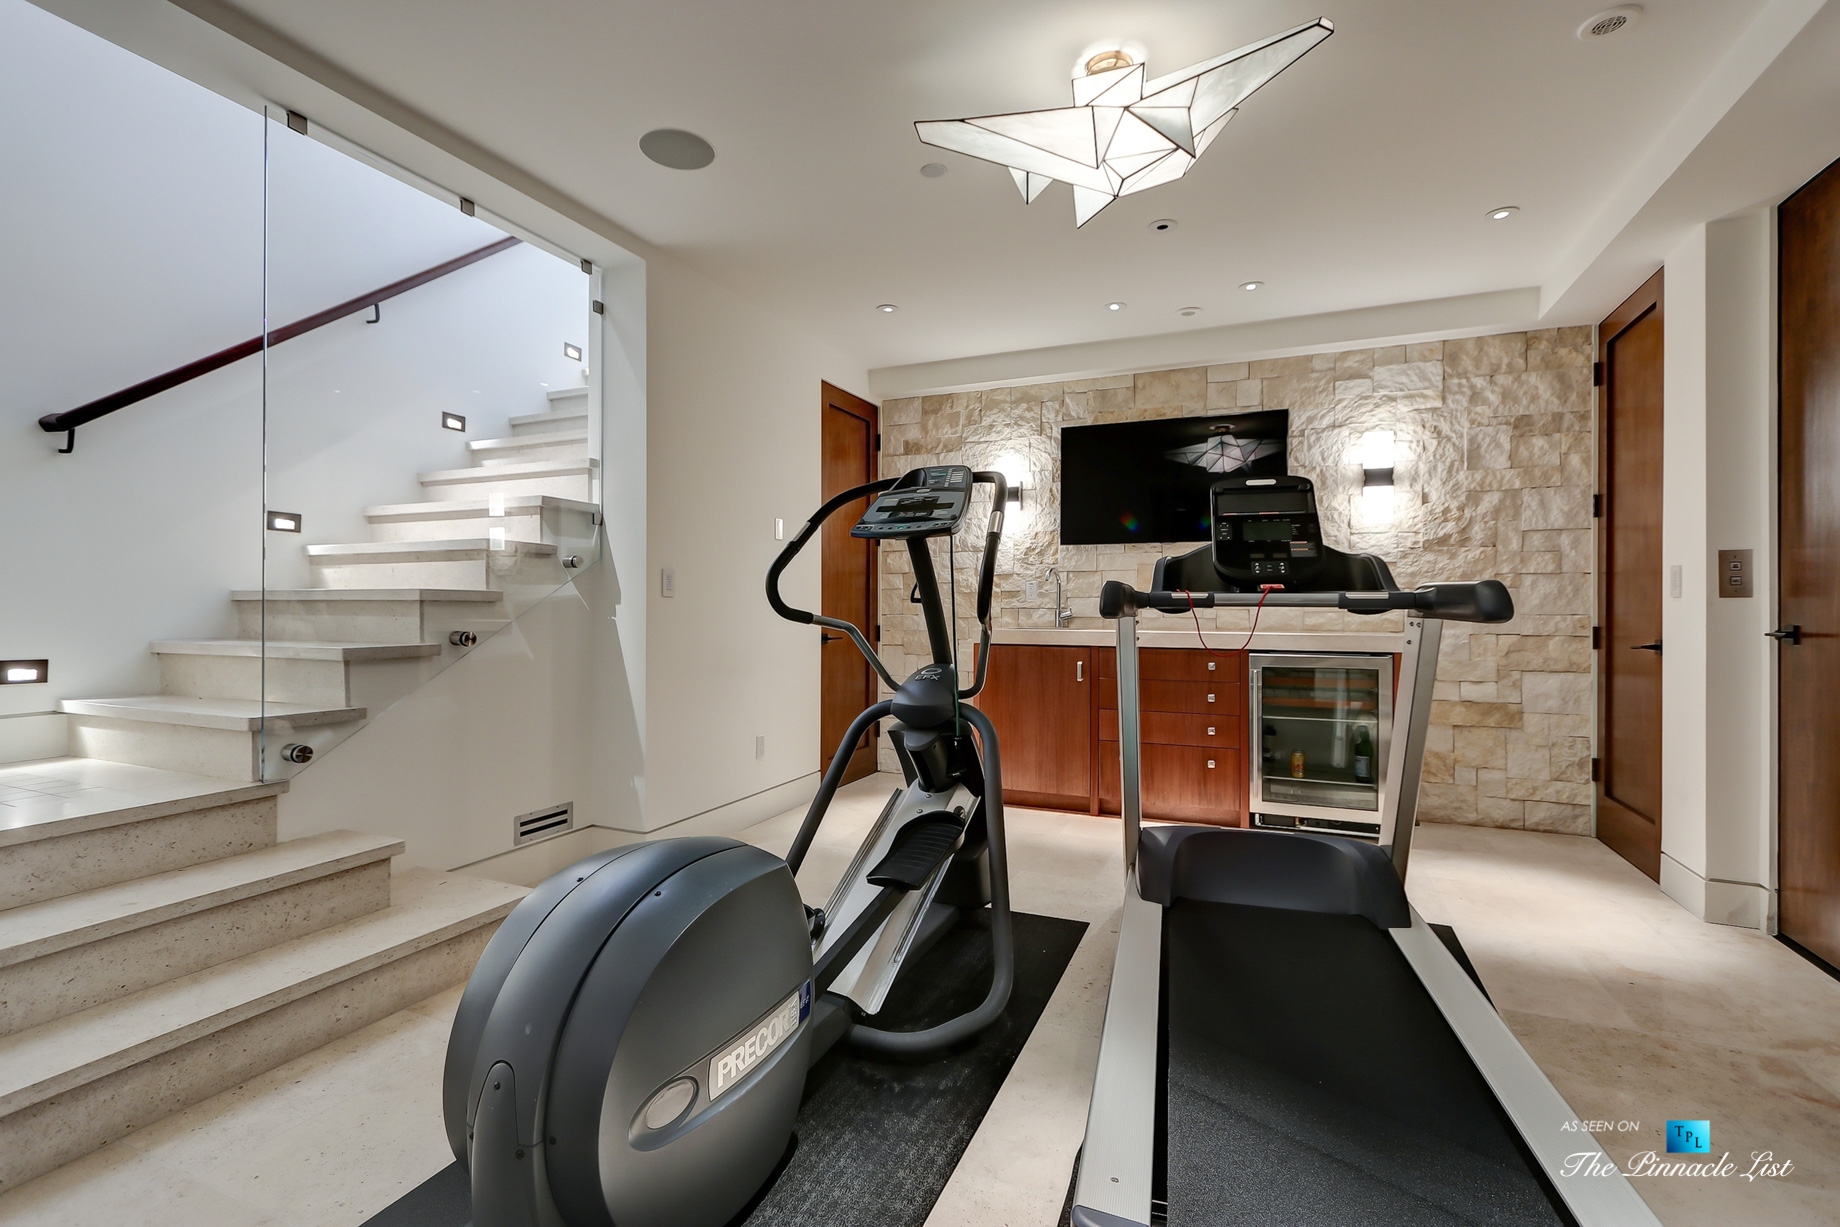 205 20th Street, Manhattan Beach, CA, USA - Gym Room - Luxury Real Estate - Ocean View Home